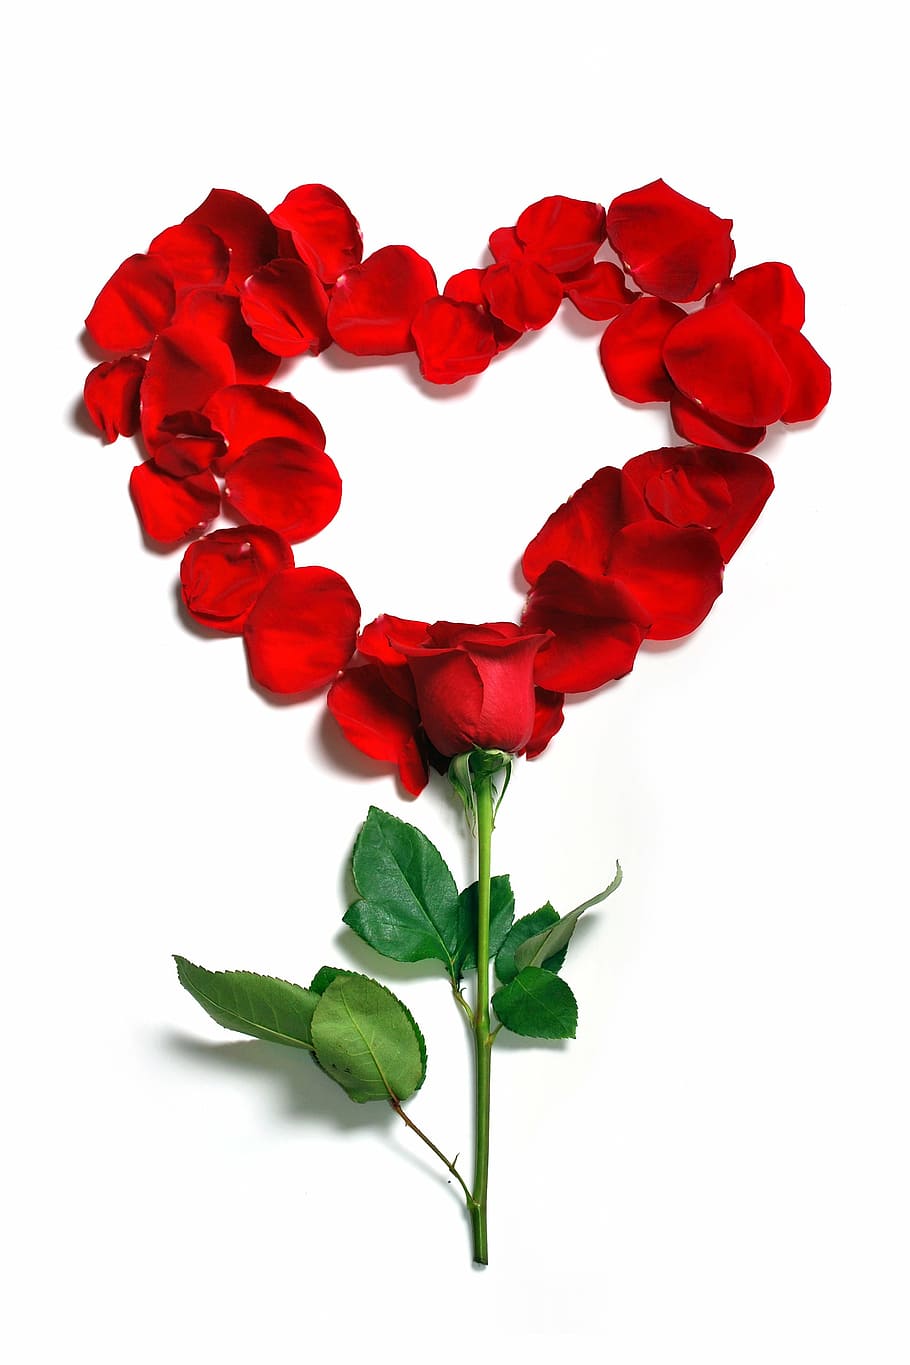 vermelho, rosa, decoração em forma de coração, pétalas, floral, flores, flor, linda, florescer, rosas